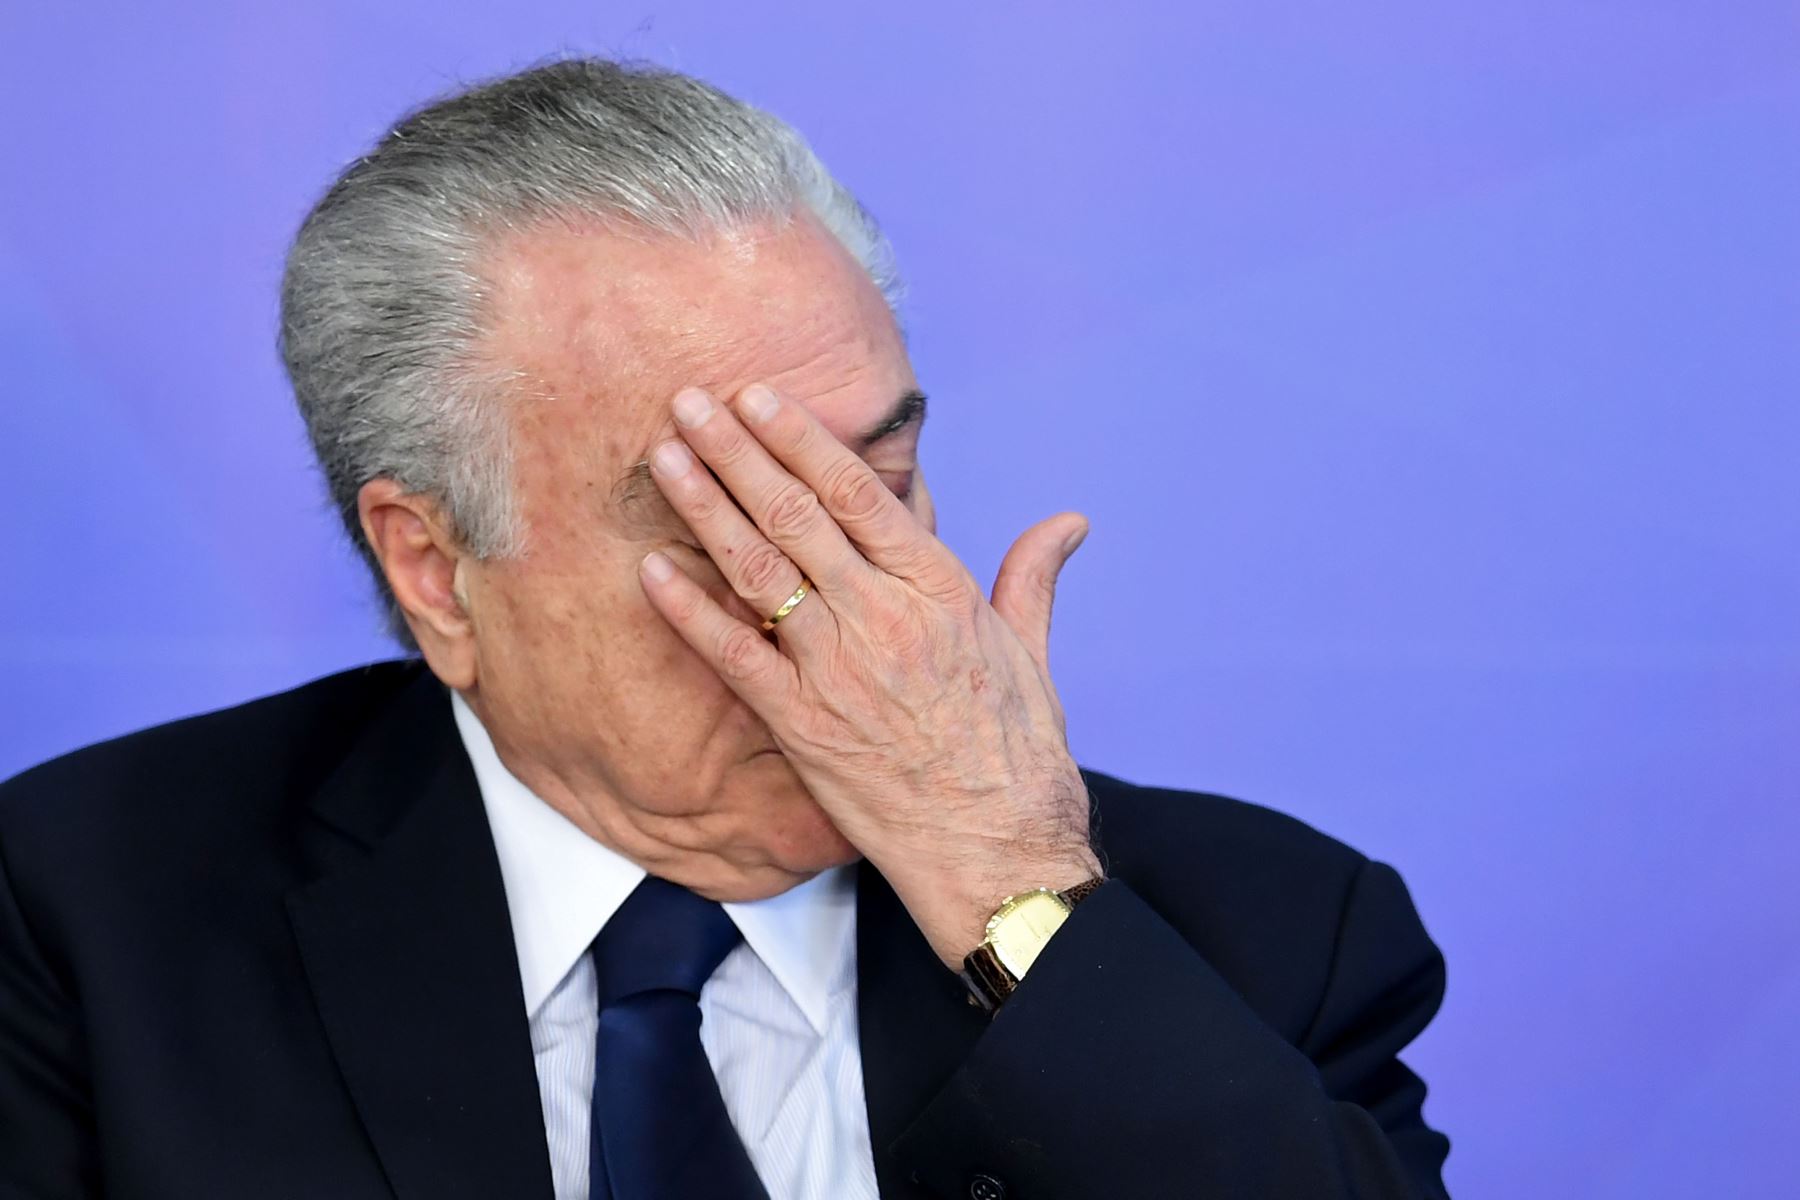 El expresidente conservador de Brasil Michel Temer (2016-2018) fue detenido este jueves por orden de un juez de la operación anticorrupción Lava Jato, informaron medios brasileños.
 Foto: AFP